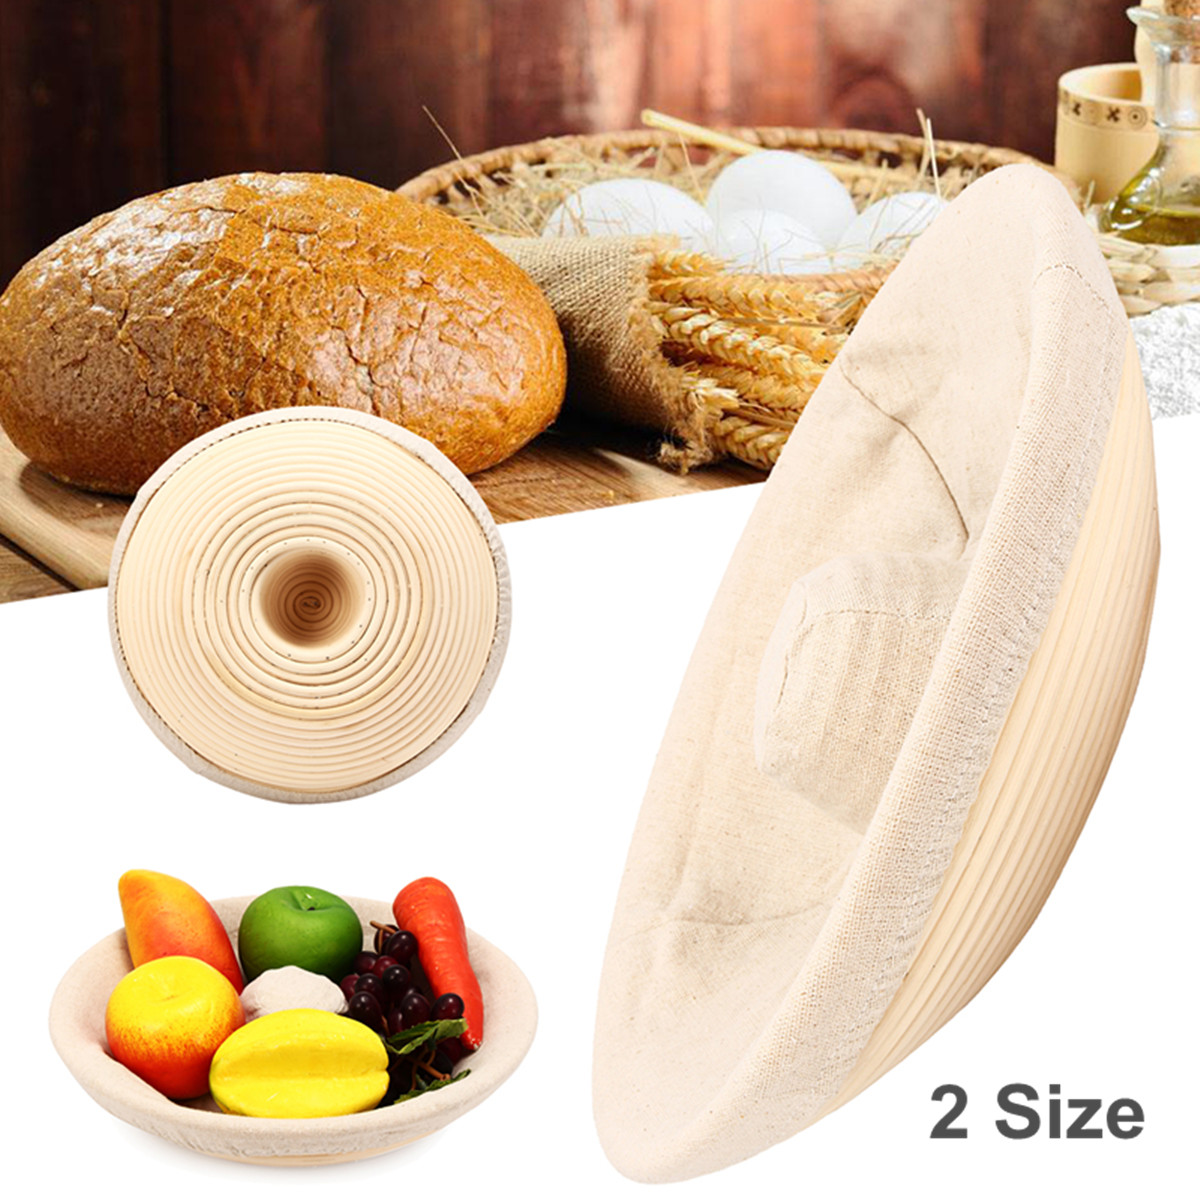 Handmade-Round-Oval-Banneton-Bortform-Rattan-Storage-Baskets-Bread-Dough-Proofing-Liner-1383037-1